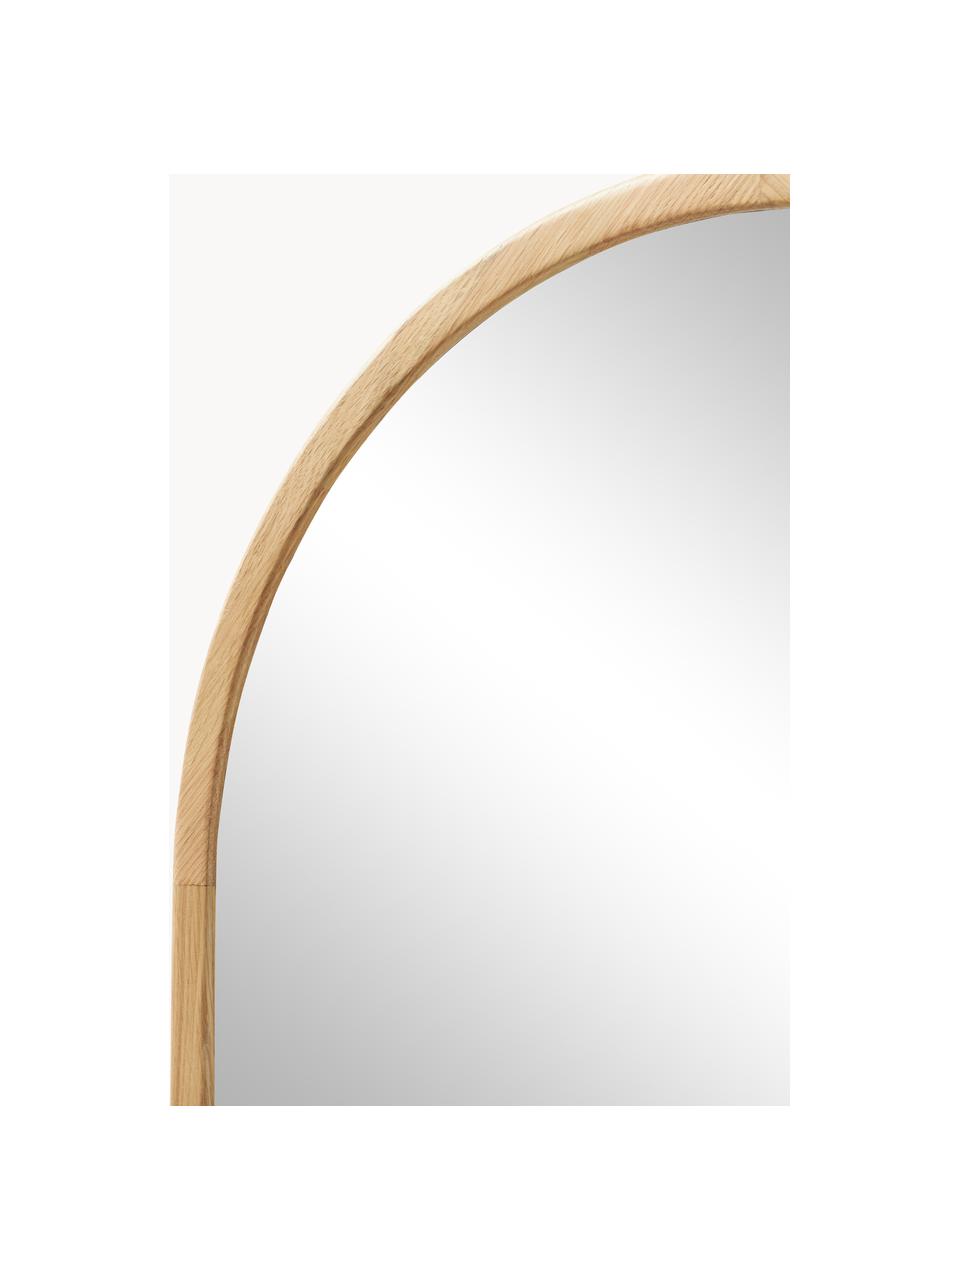 Ganzkörperspiegel Levan mit Eichenholzrahmen, Rahmen: Eichenholz, Rückseite: Mitteldichte Holzfaserpla, Spiegelfläche: Spiegelglas Dieses Produk, Eichenholz, B 65 x H 170 cm